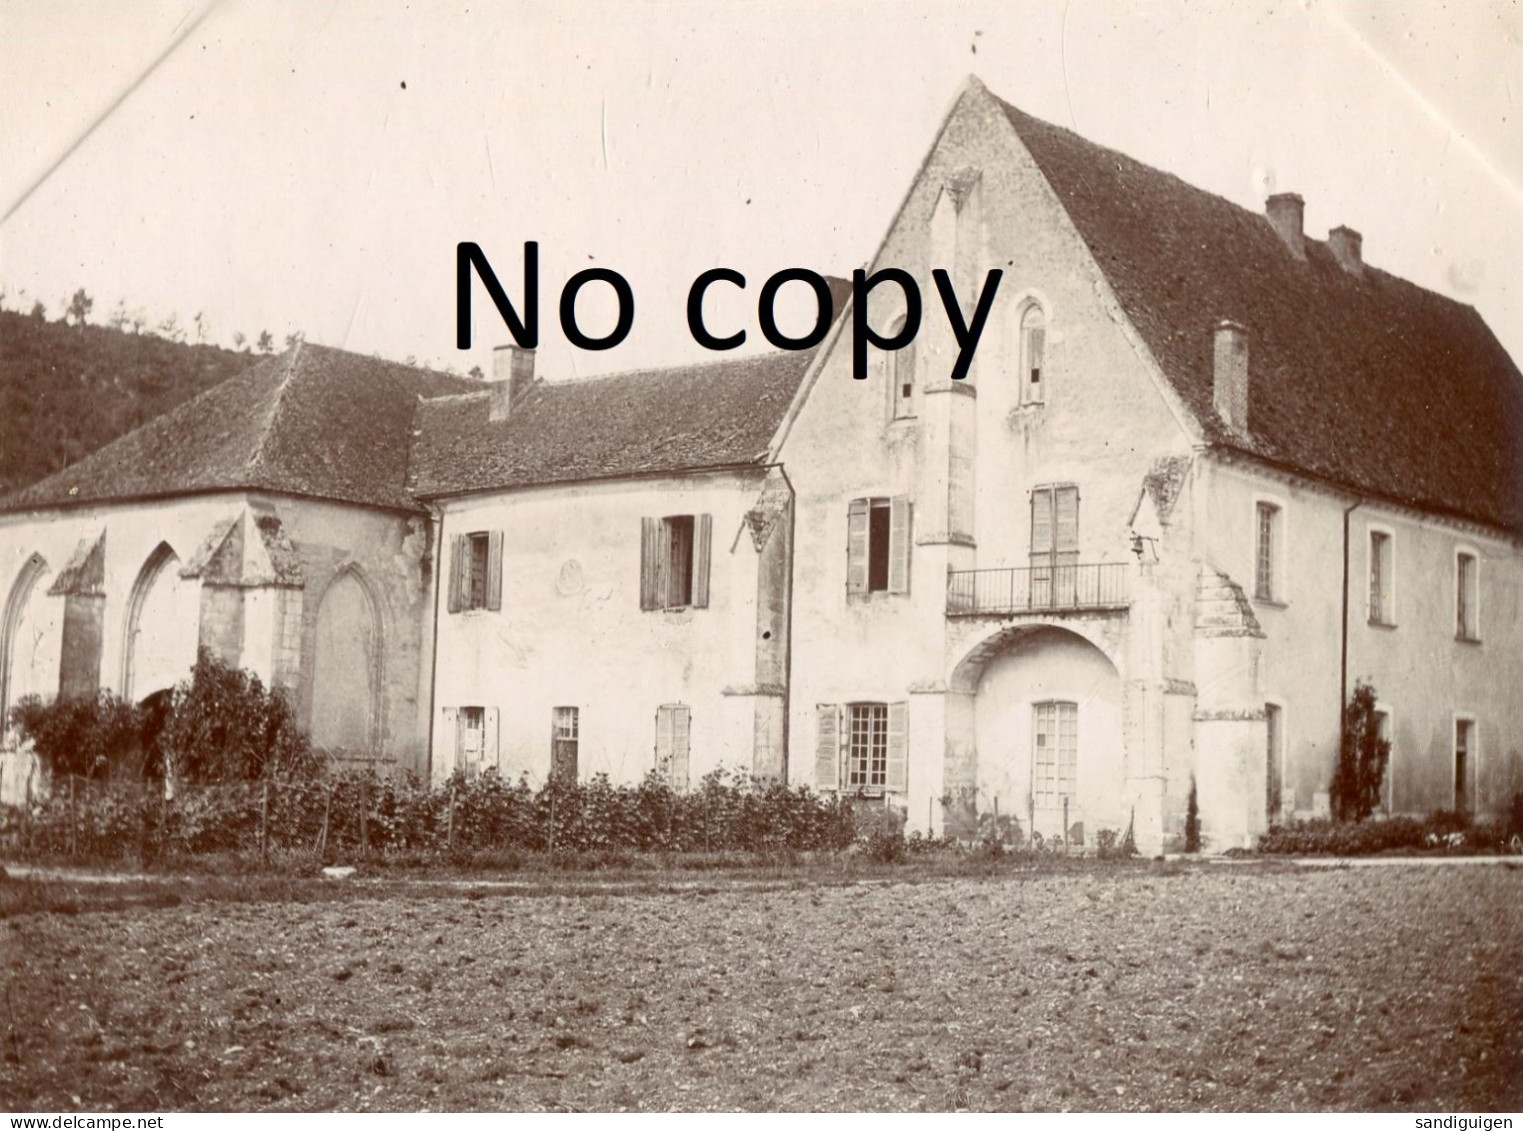 PHOTO FRANCAISE - ABBAYE DE REIGNY A VERMENTON PRES DE LUCY SUR CURE YONNE 89 - VERS 1900 - 1910 - Places